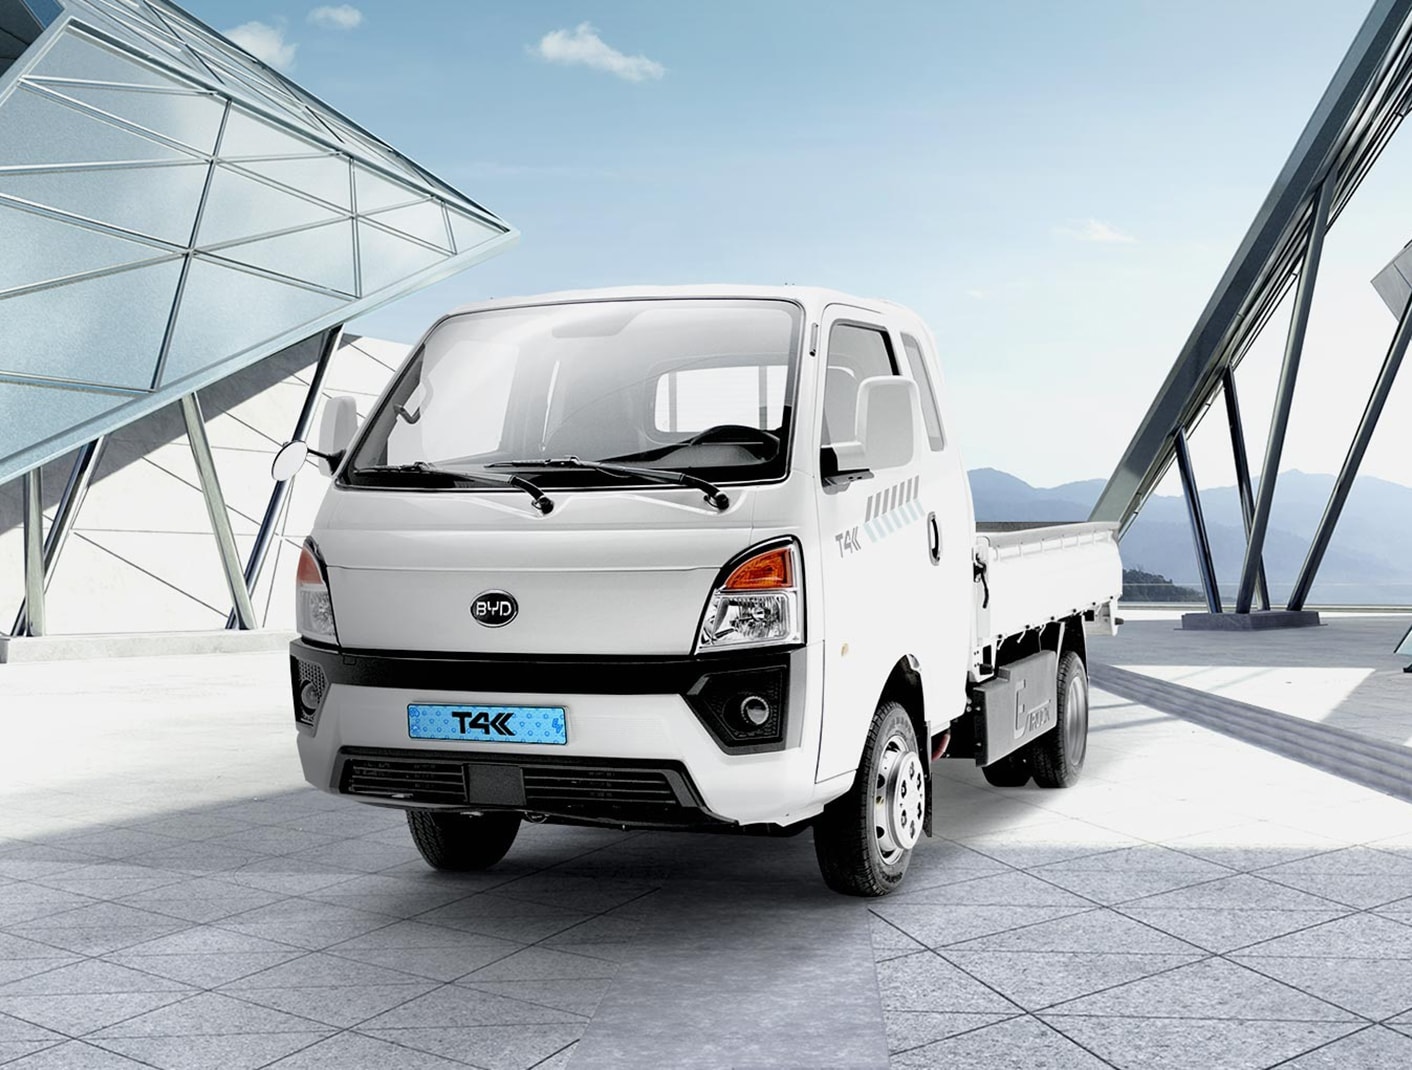 한국타이어, BYD 전기 트럭 ‘T4K’에 신차용 타이어 공급